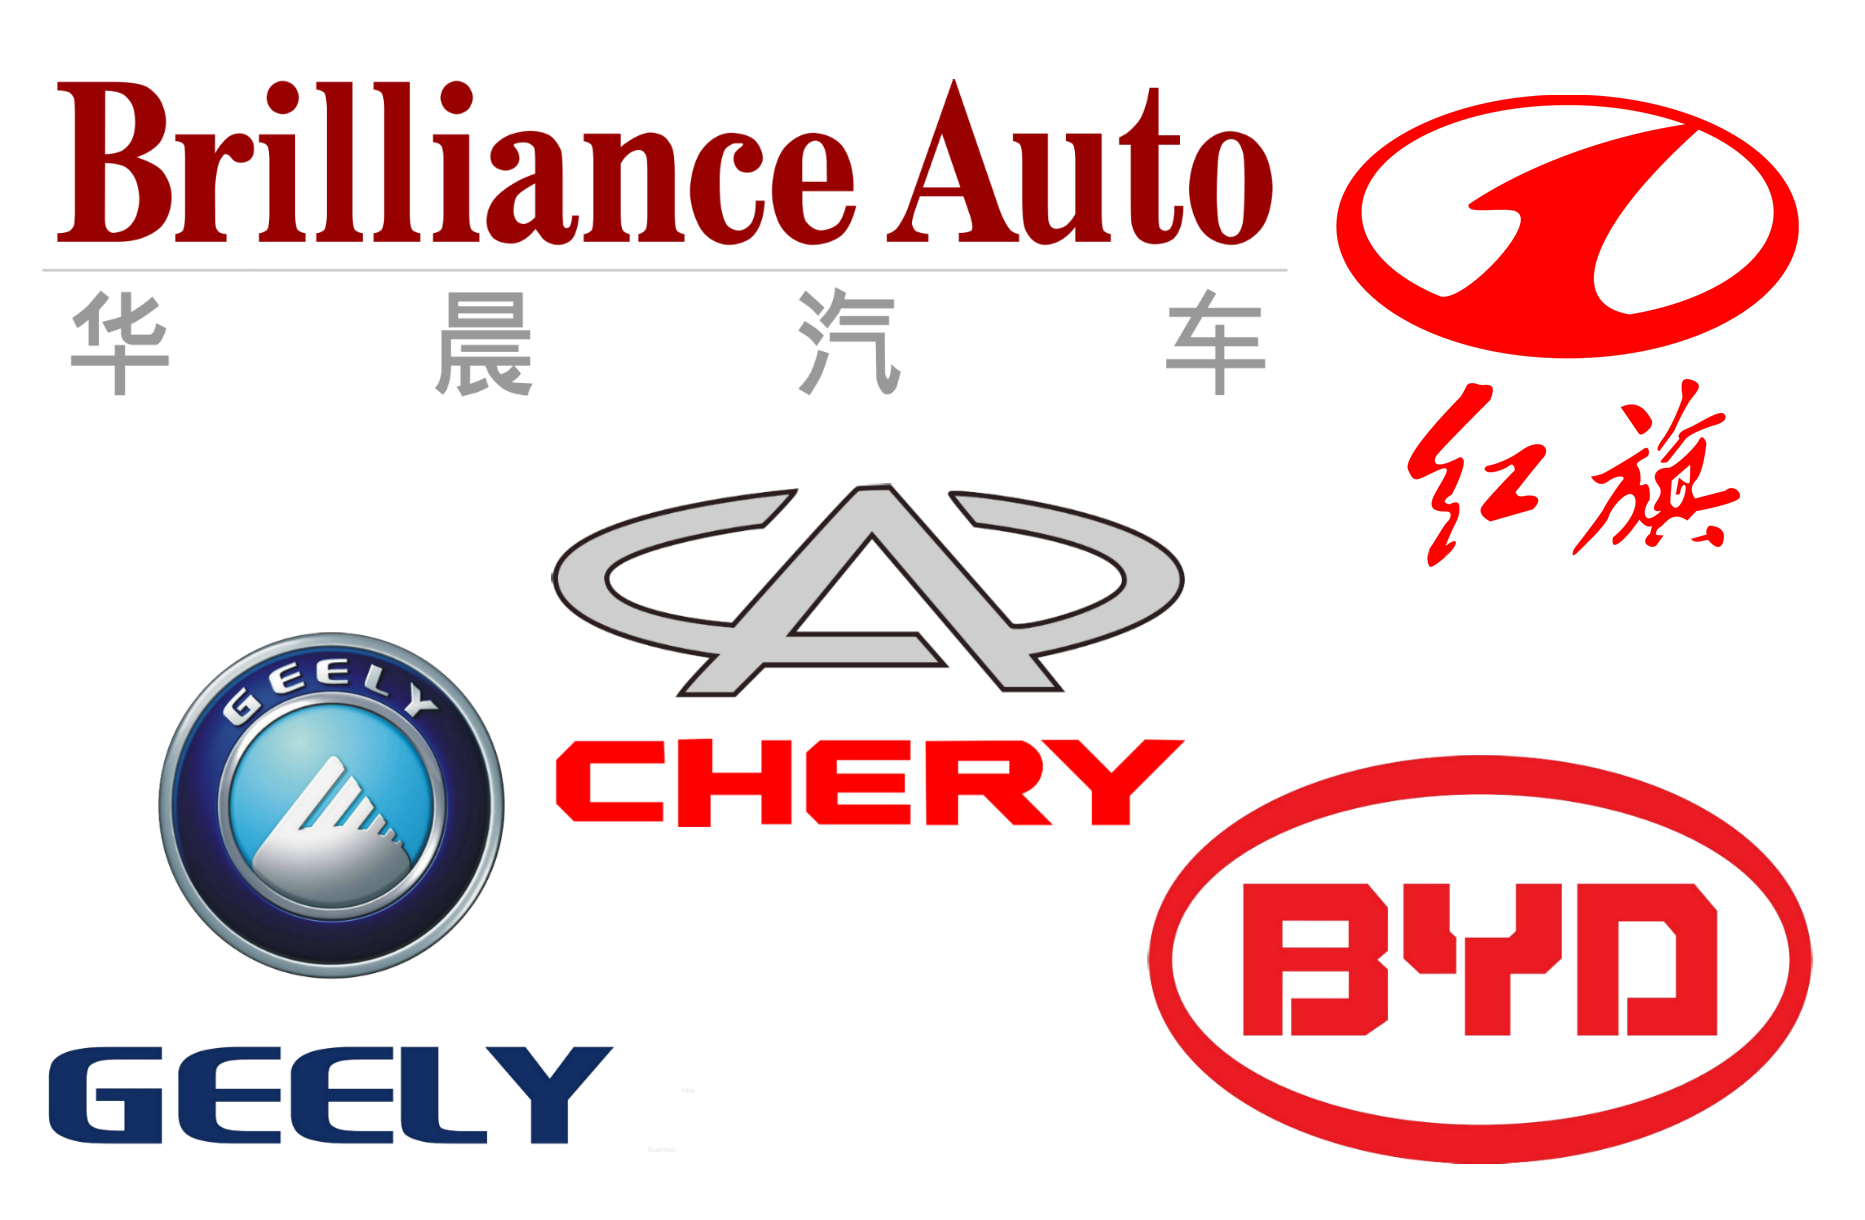 Эмблемы китайских. Значки китайских авто. Автомобильные эмблемы китайских марок. Марки китайских автомобилей со значками. Китайские автомобильные бренды.